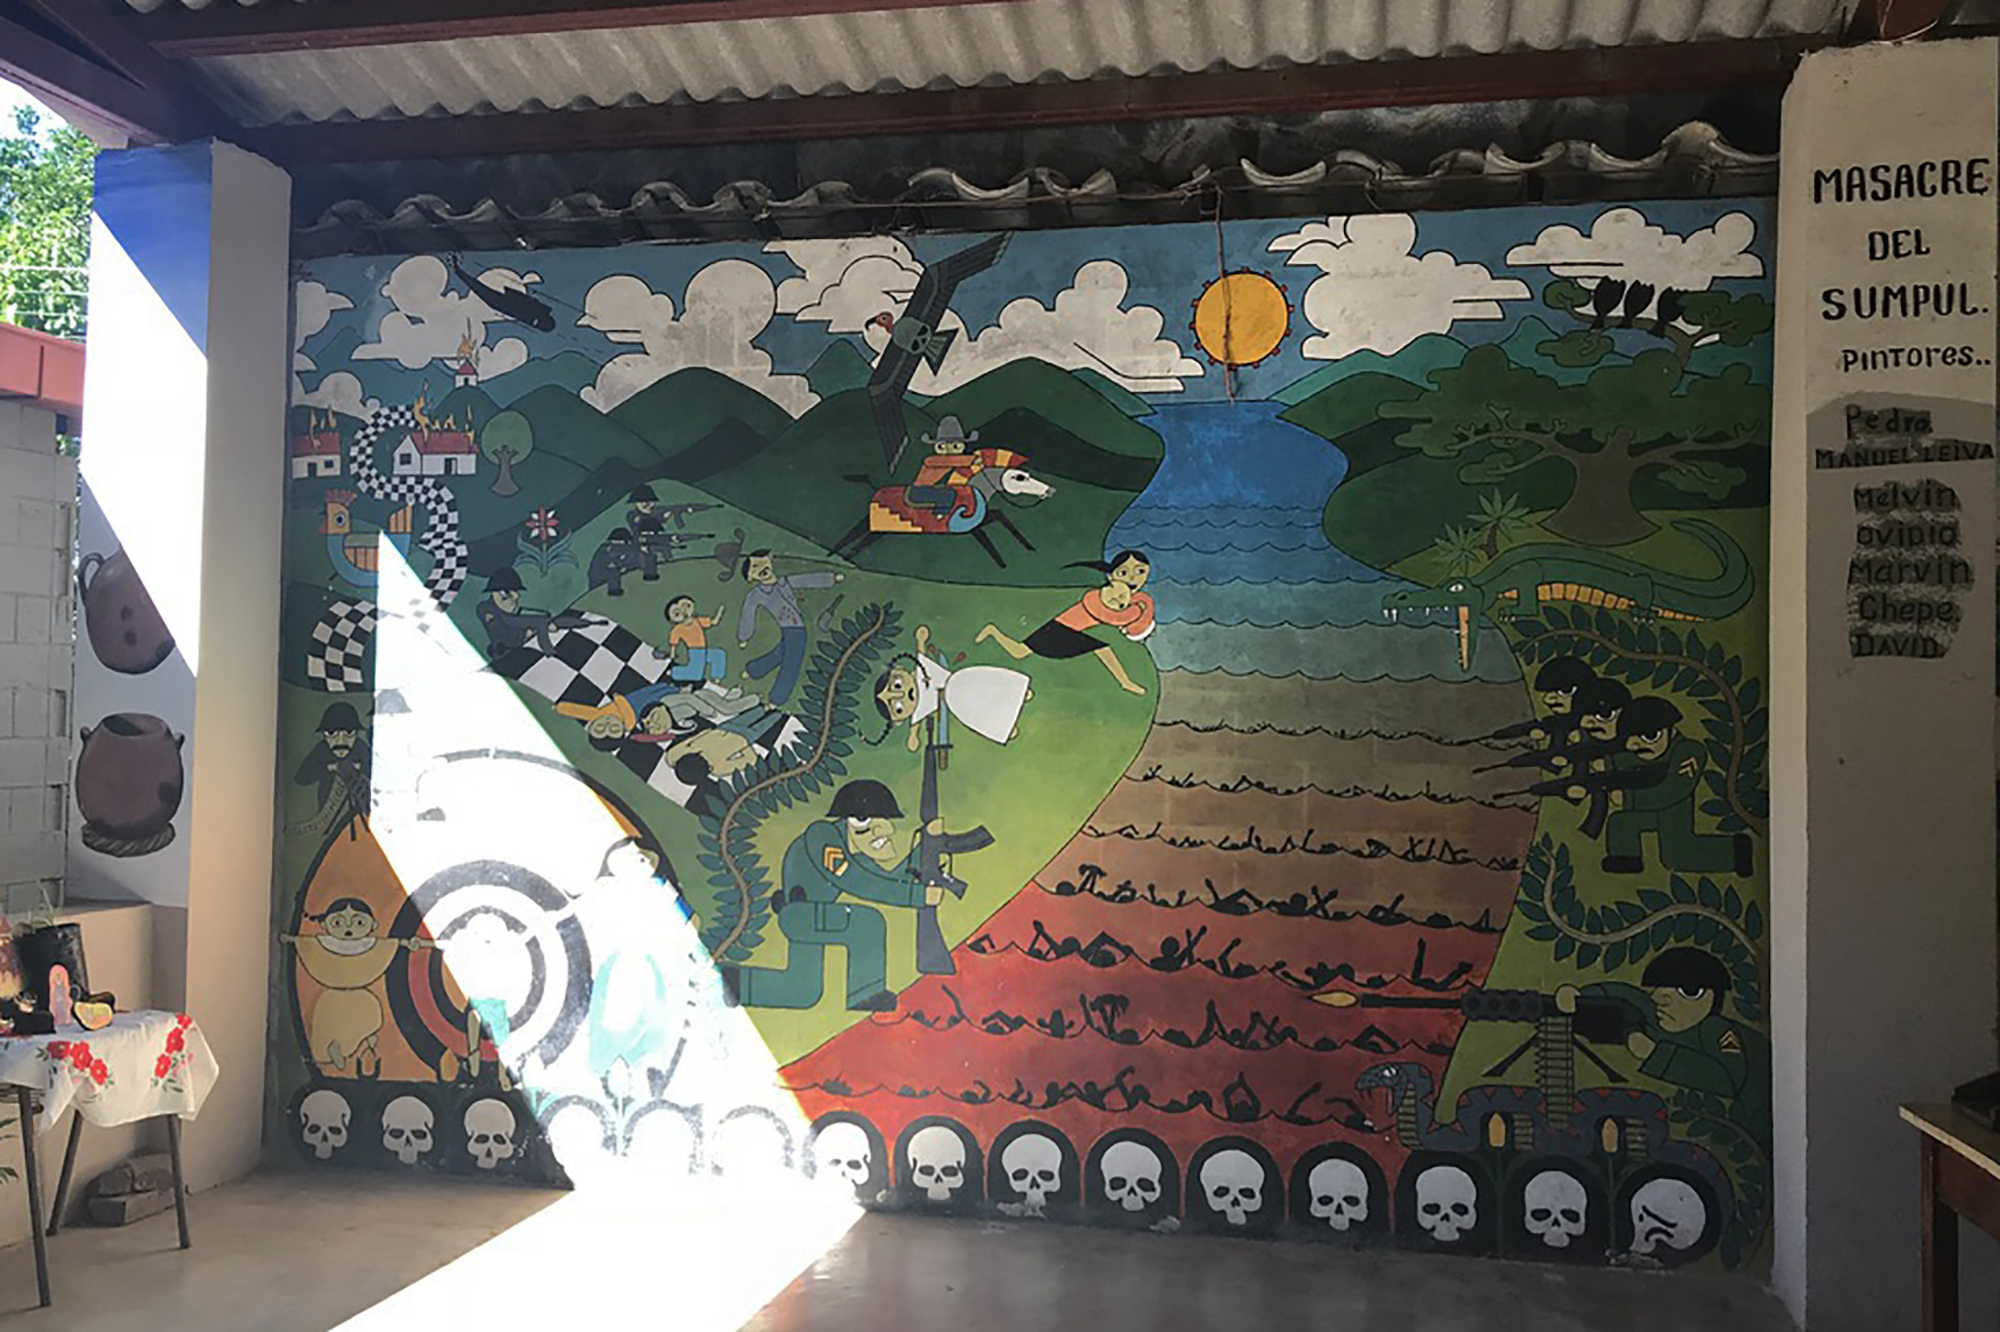 A mural depicting the Sumpul River Massacre in Arcatao, El Salvador. 